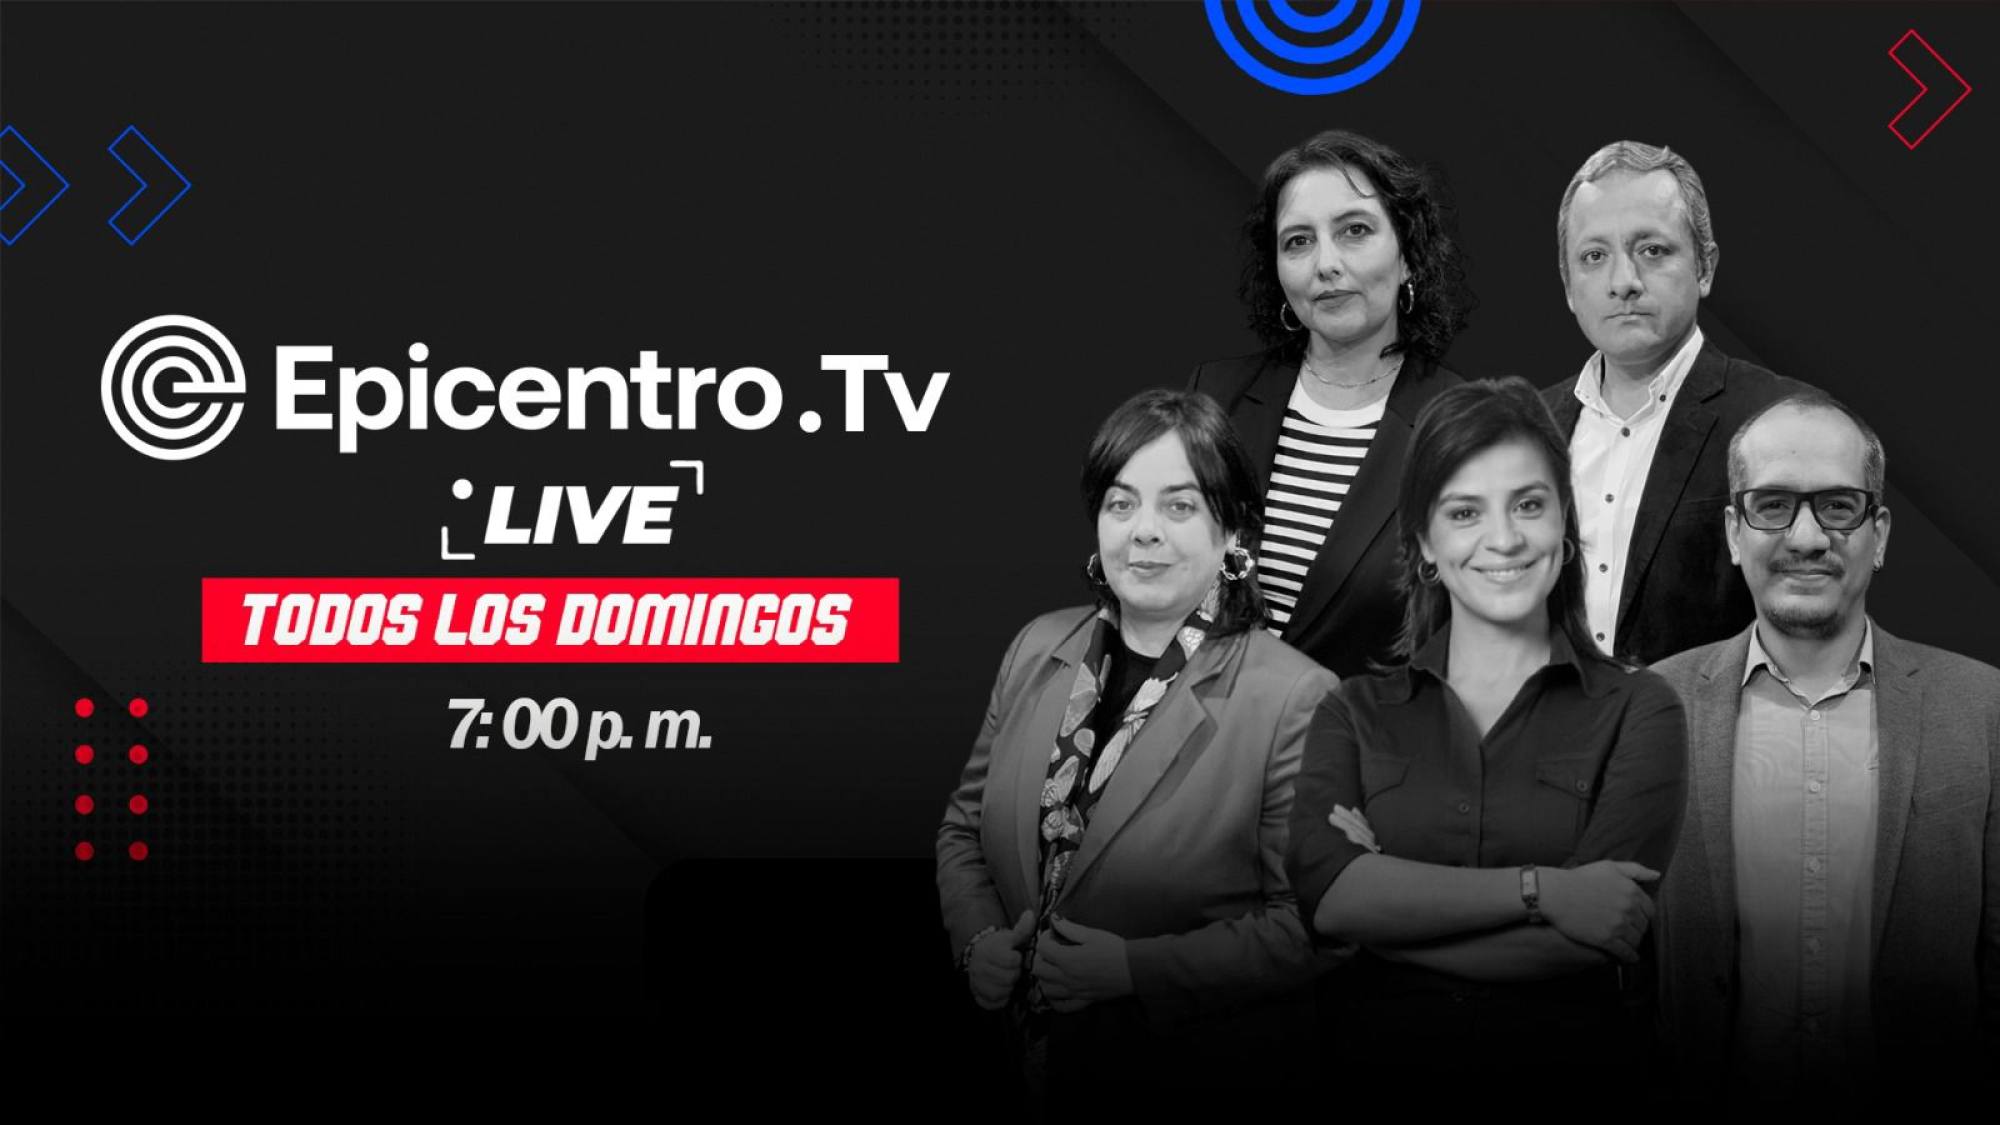 Epicentro Tv Live | El país con el agua al cuello, Epicentro TV